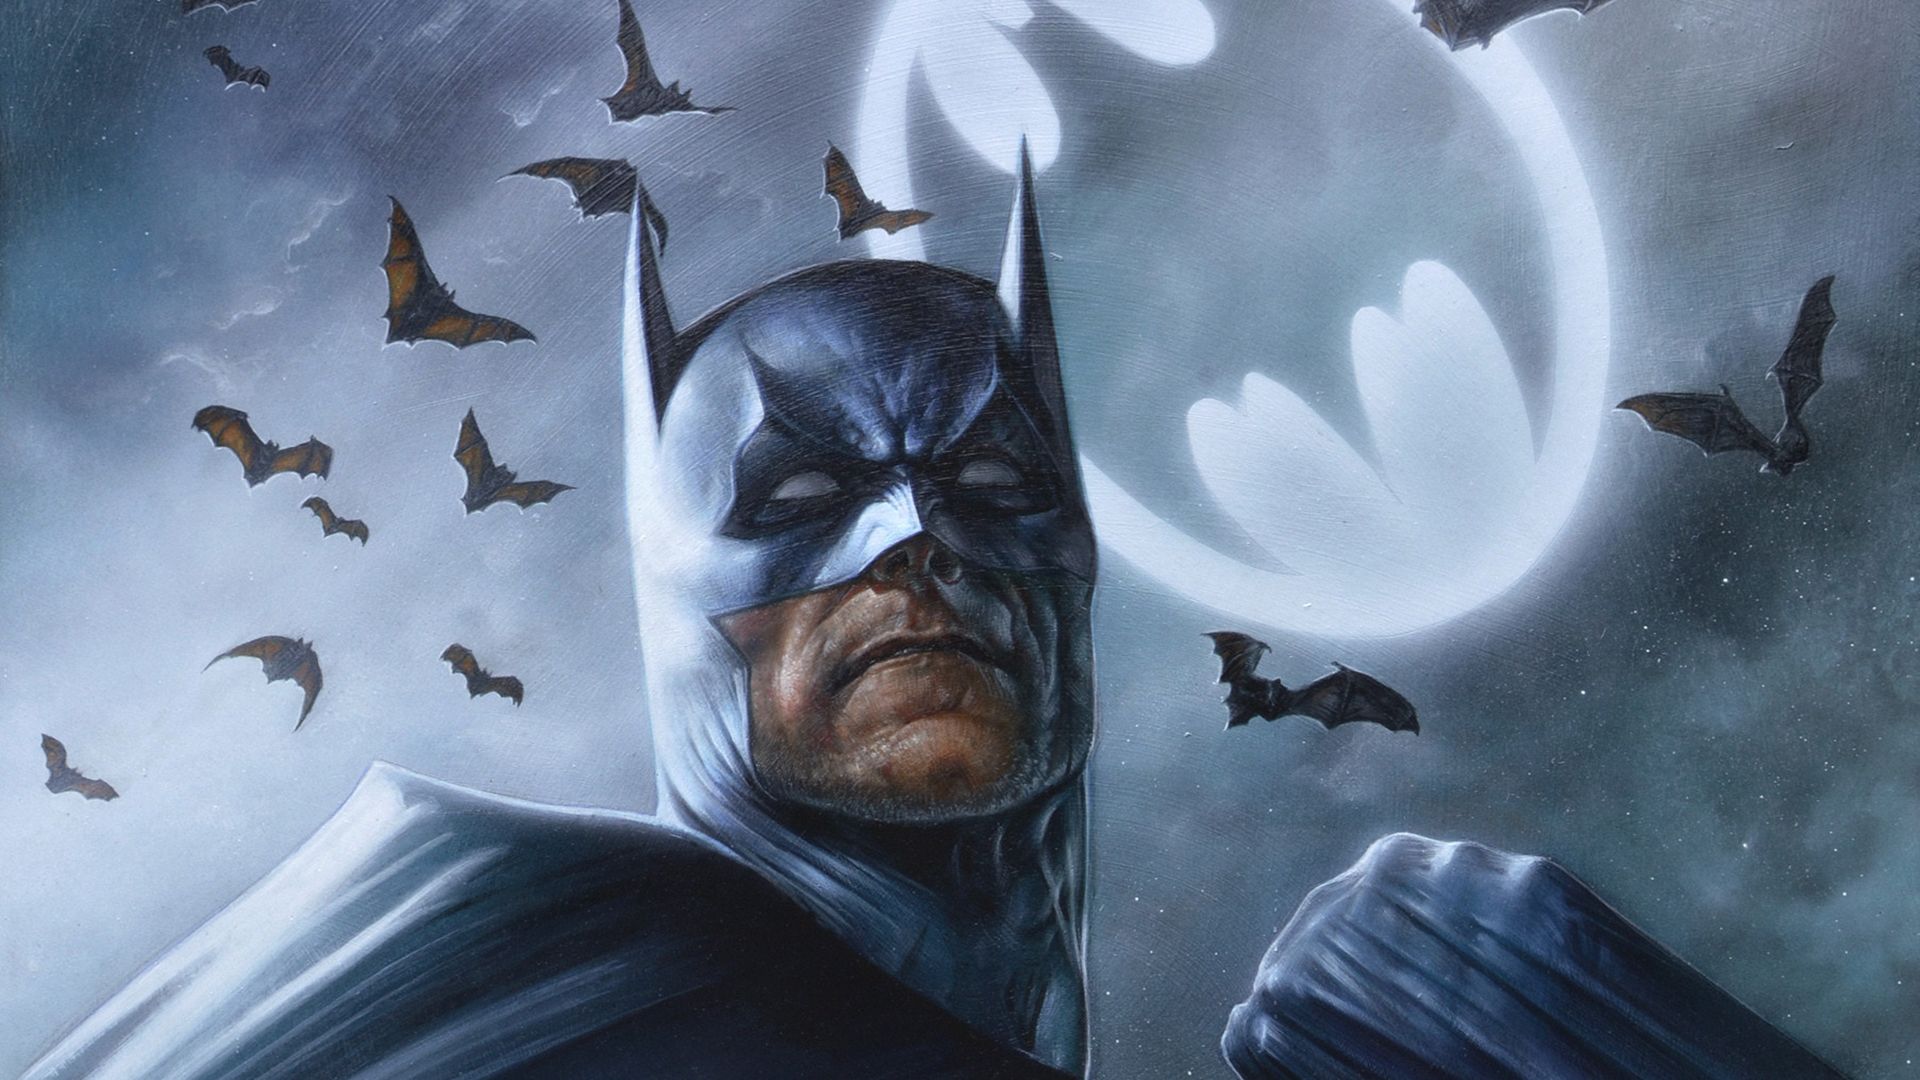 DC Comics Batman & Bats Dark Wallpapers - Batman Wallpapers 4k